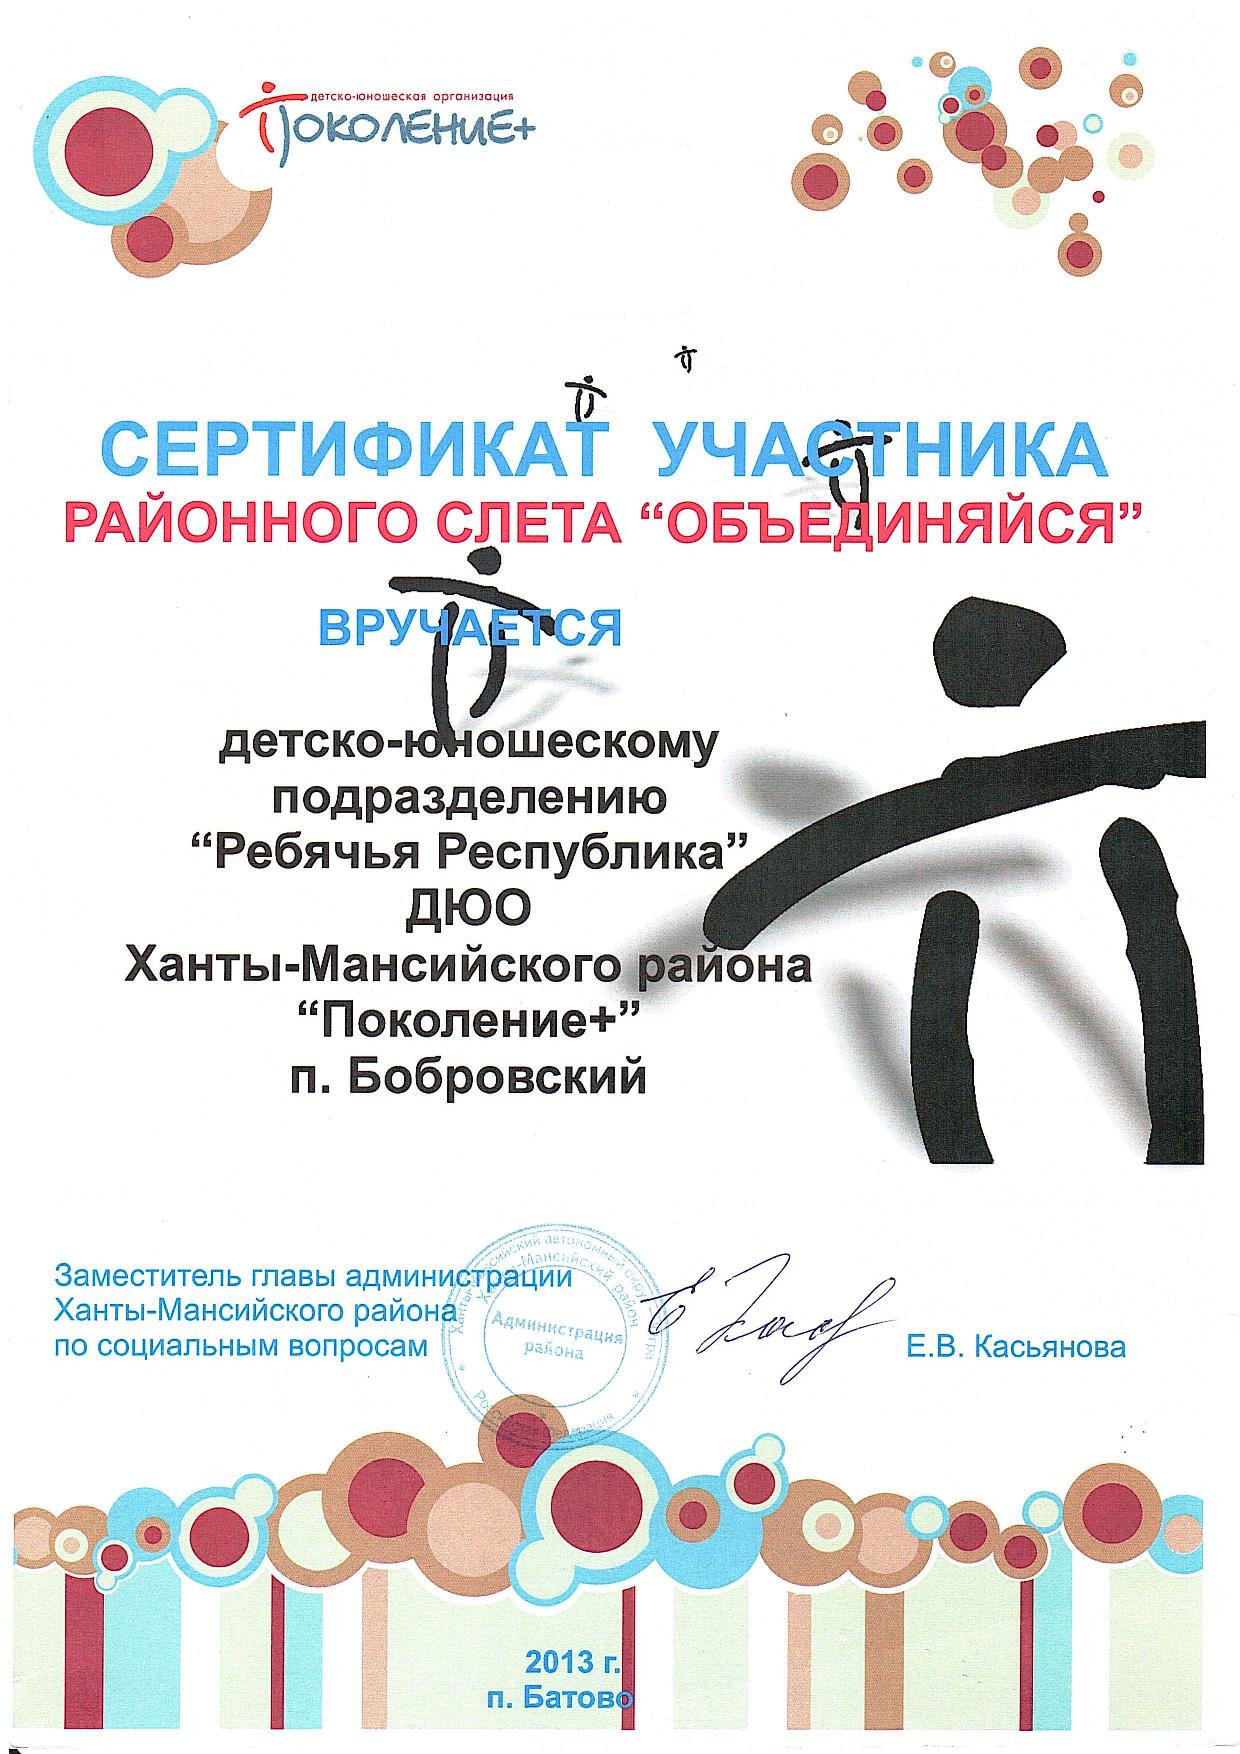 Сертификат участника.  Районный слет Поколение+. 2013